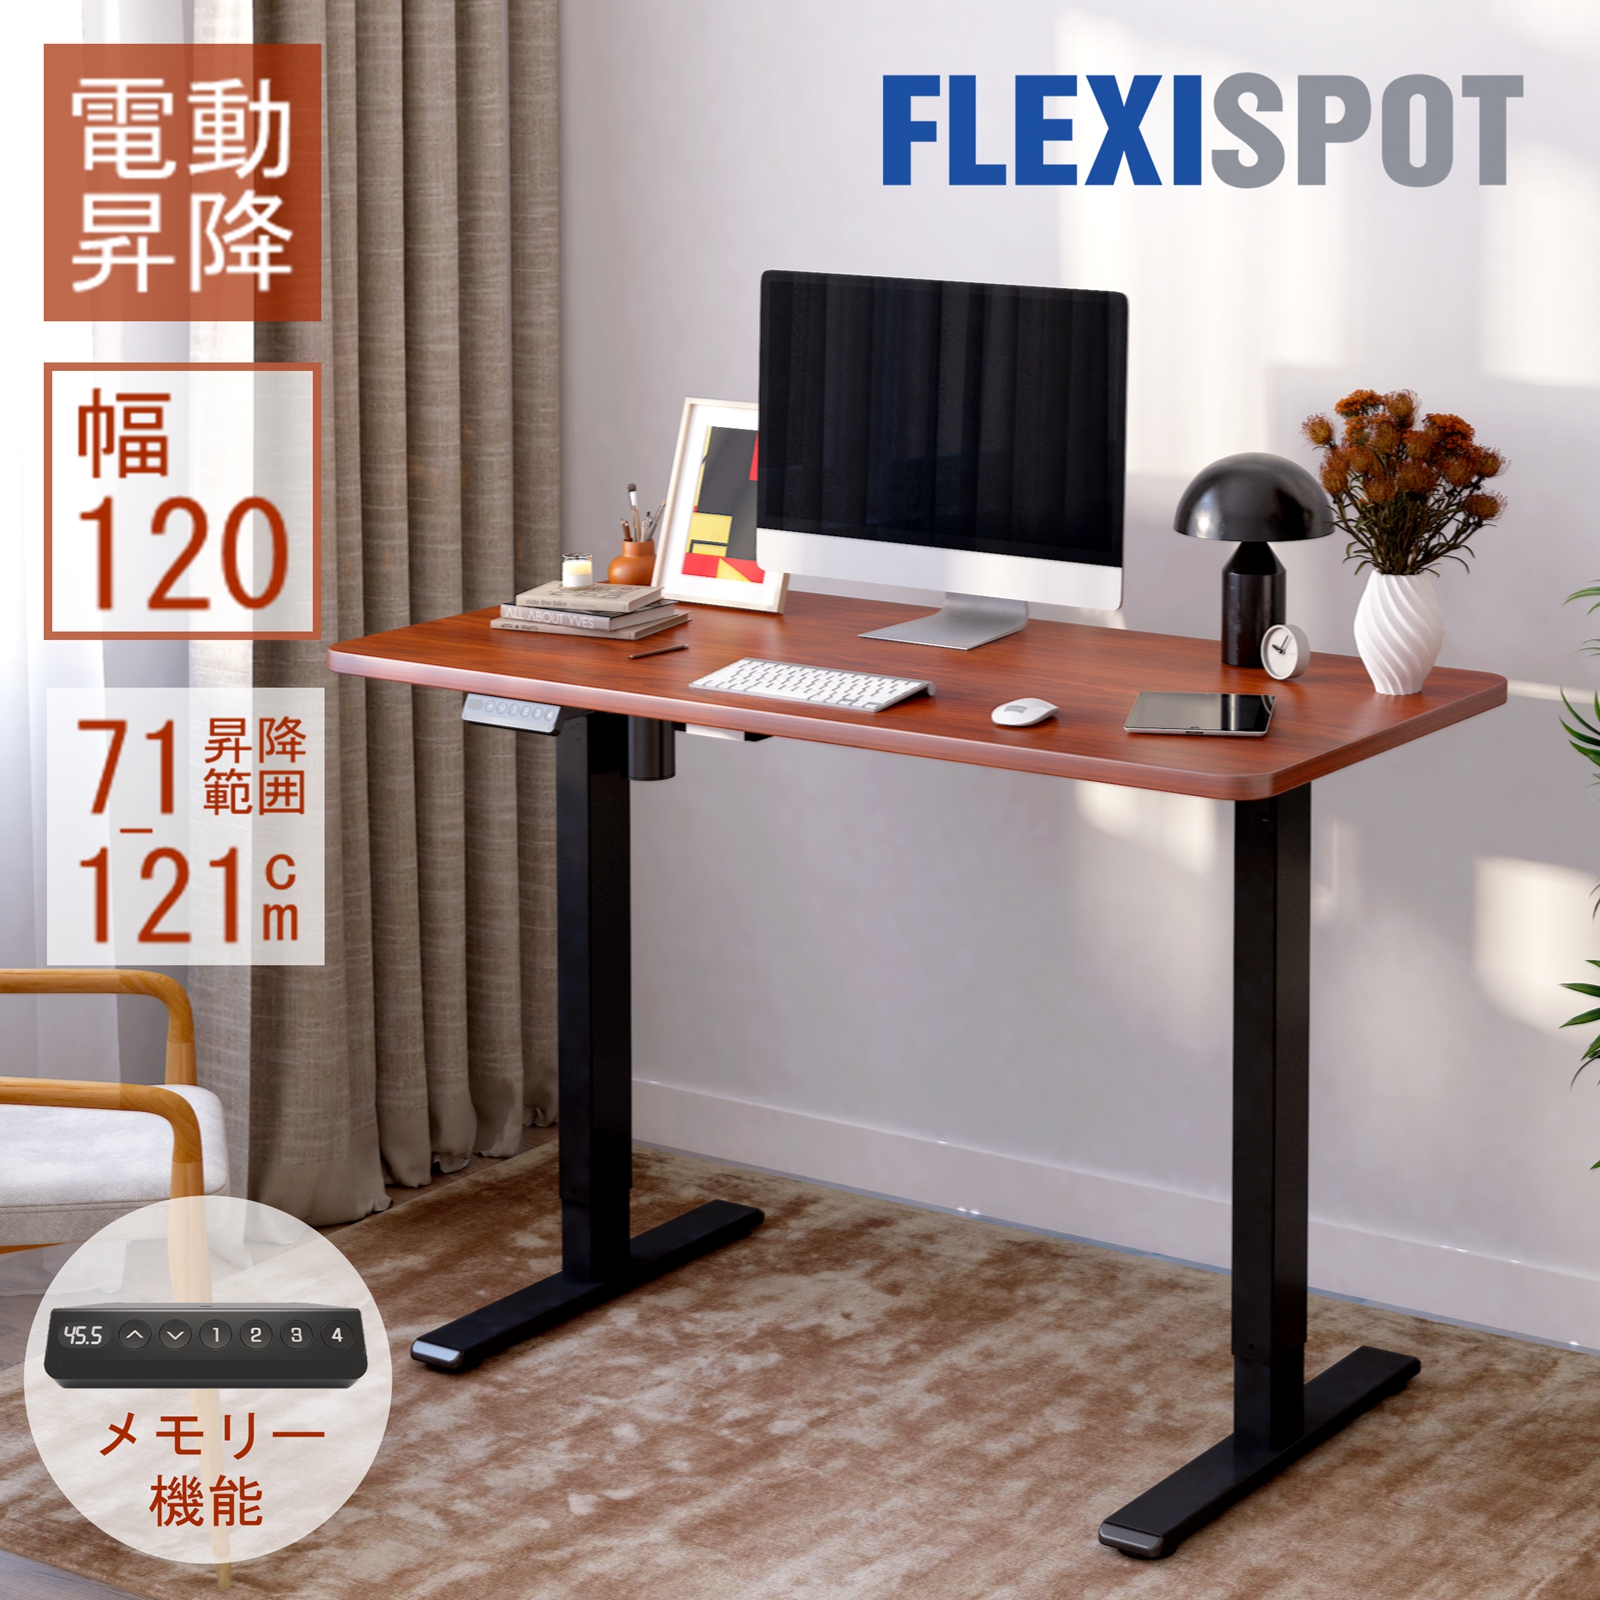 商品追加値下げ在庫復活 flexispot E7 電動式昇降テーブル asakusa.sub.jp